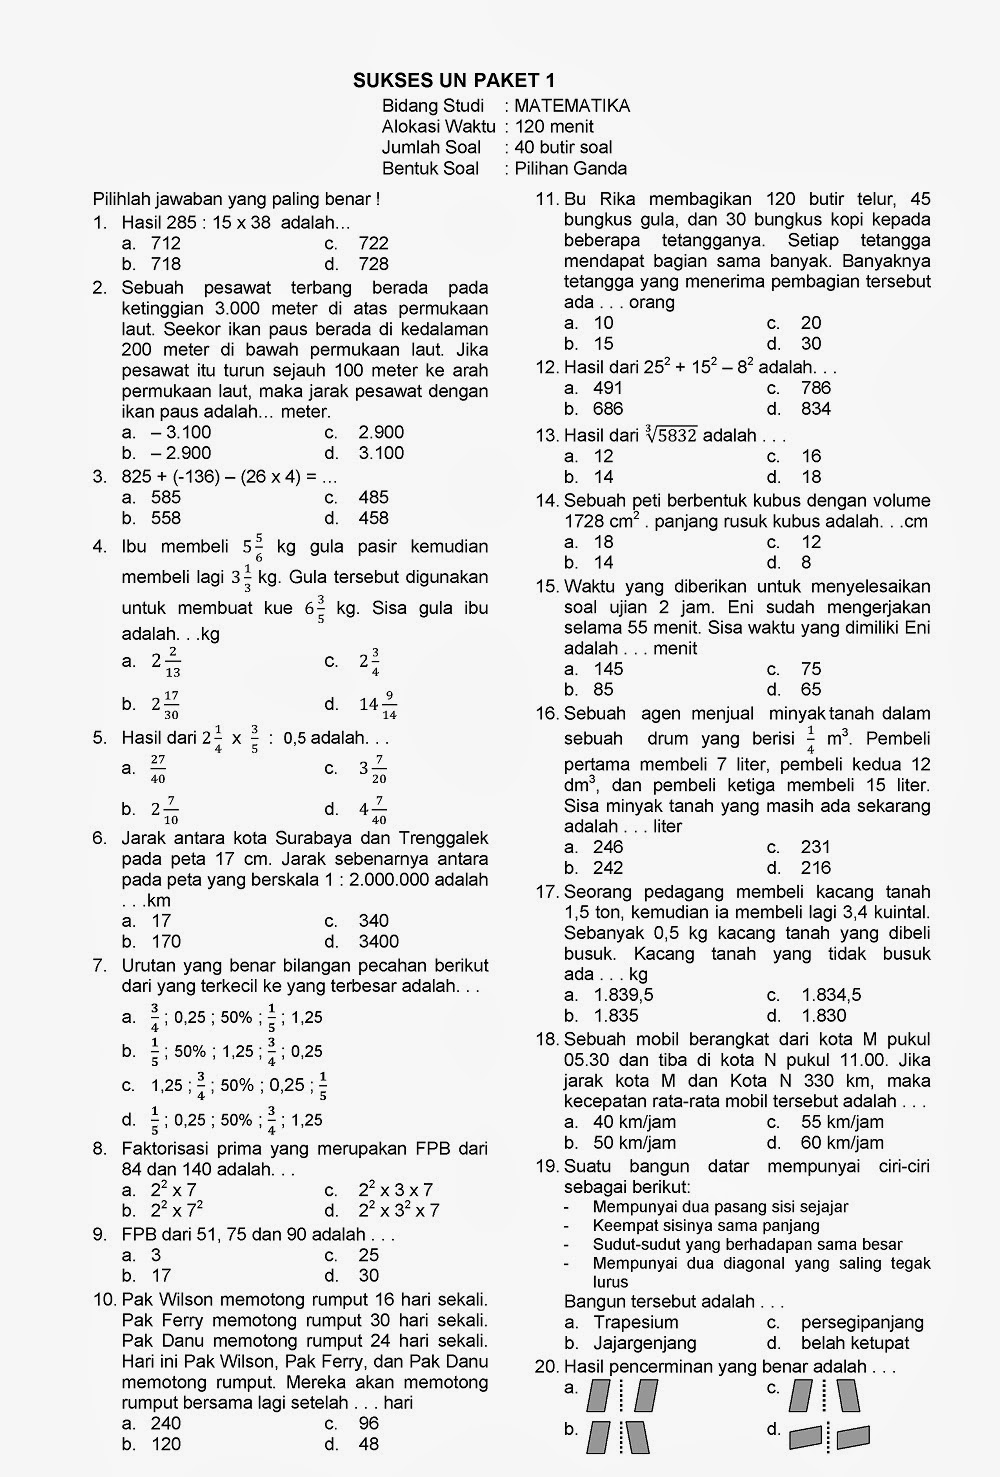 Kunci Jawaban dan Soal UN Matematika Kelas 6 SD TA 2013 